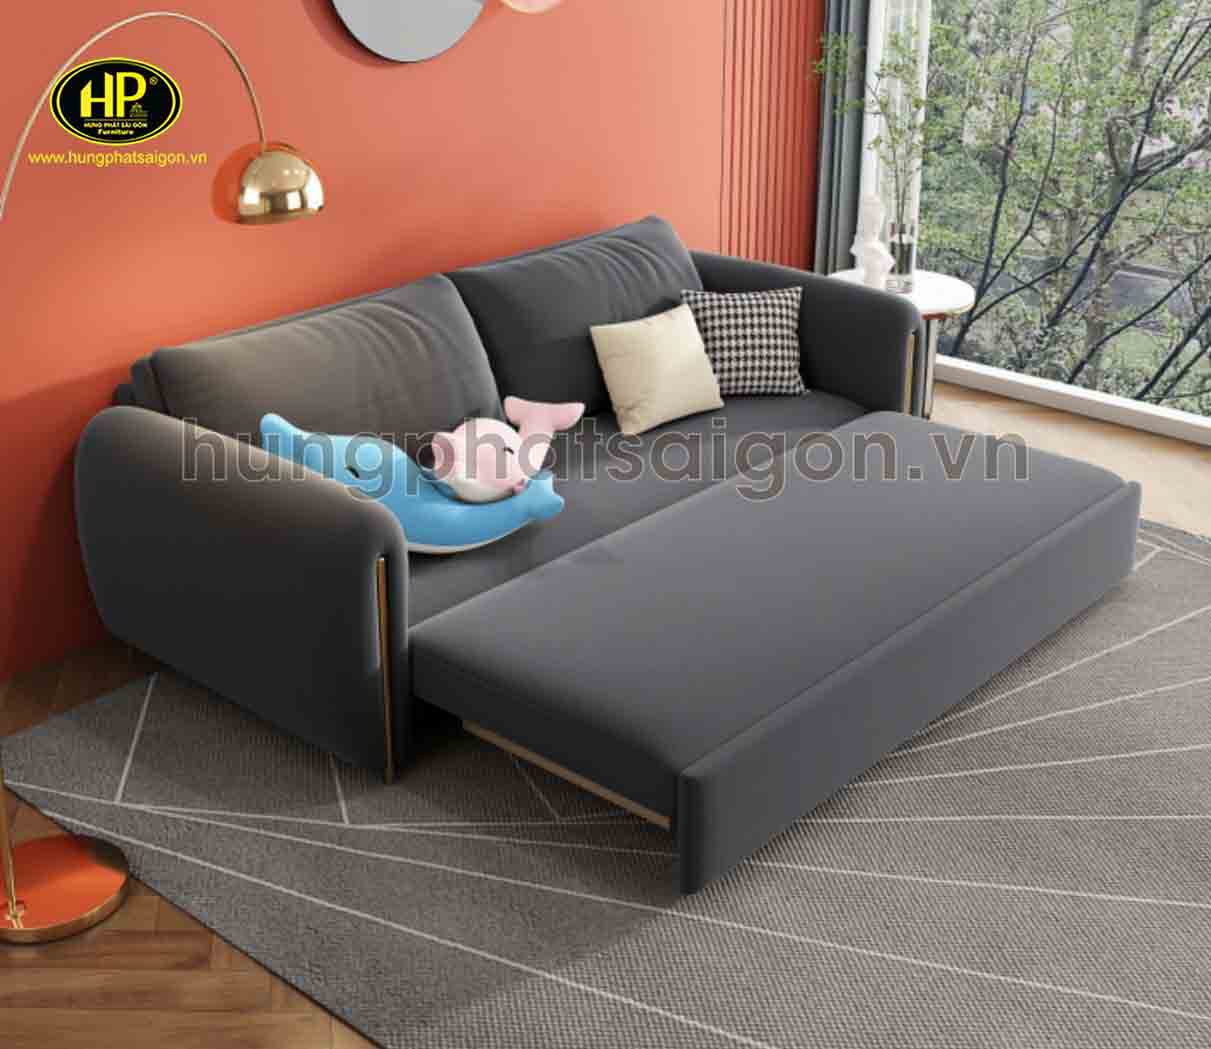 mẫu sofa giường thông minh cao cấp GK-626